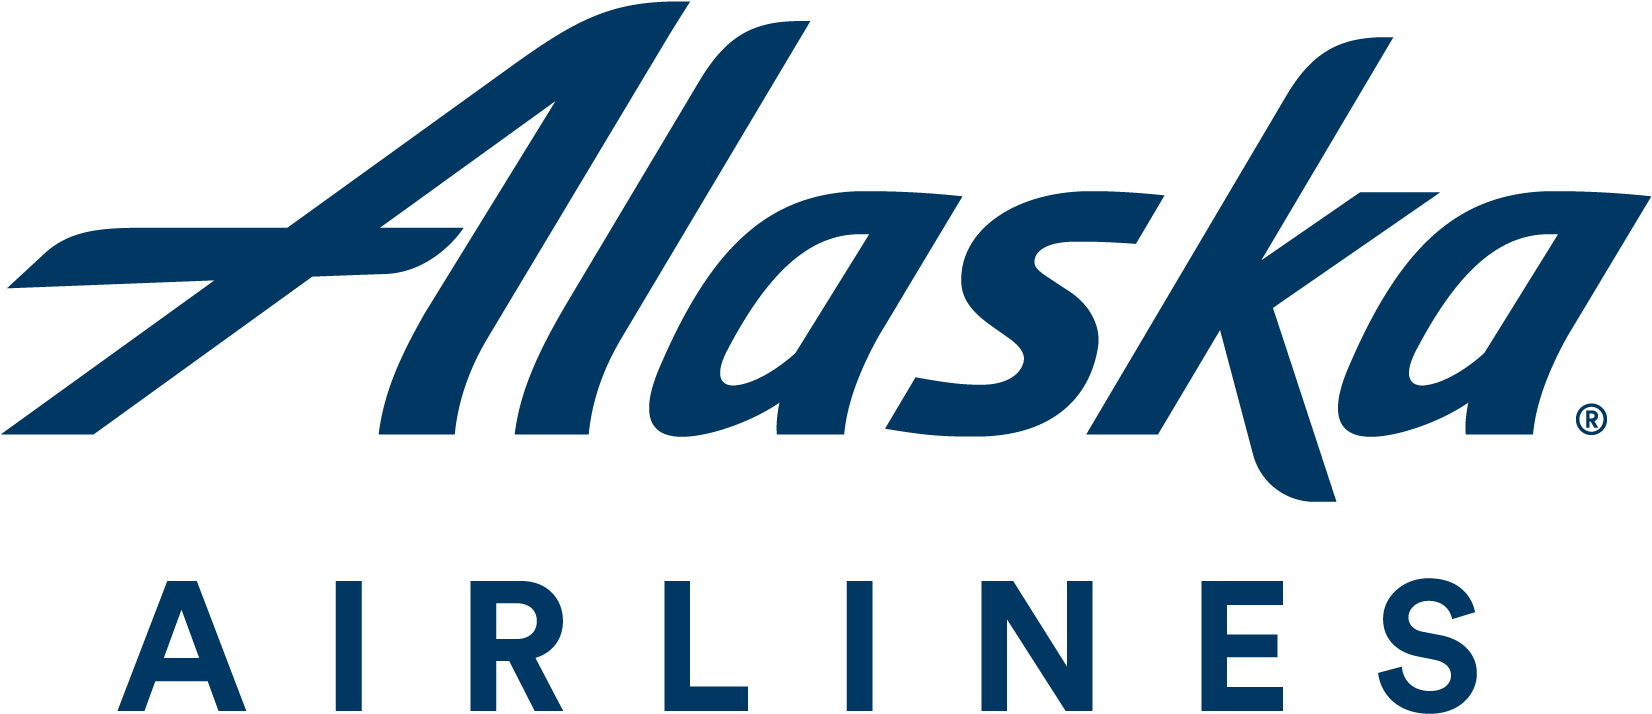 Alaska Air Logo Png (1960x1021)